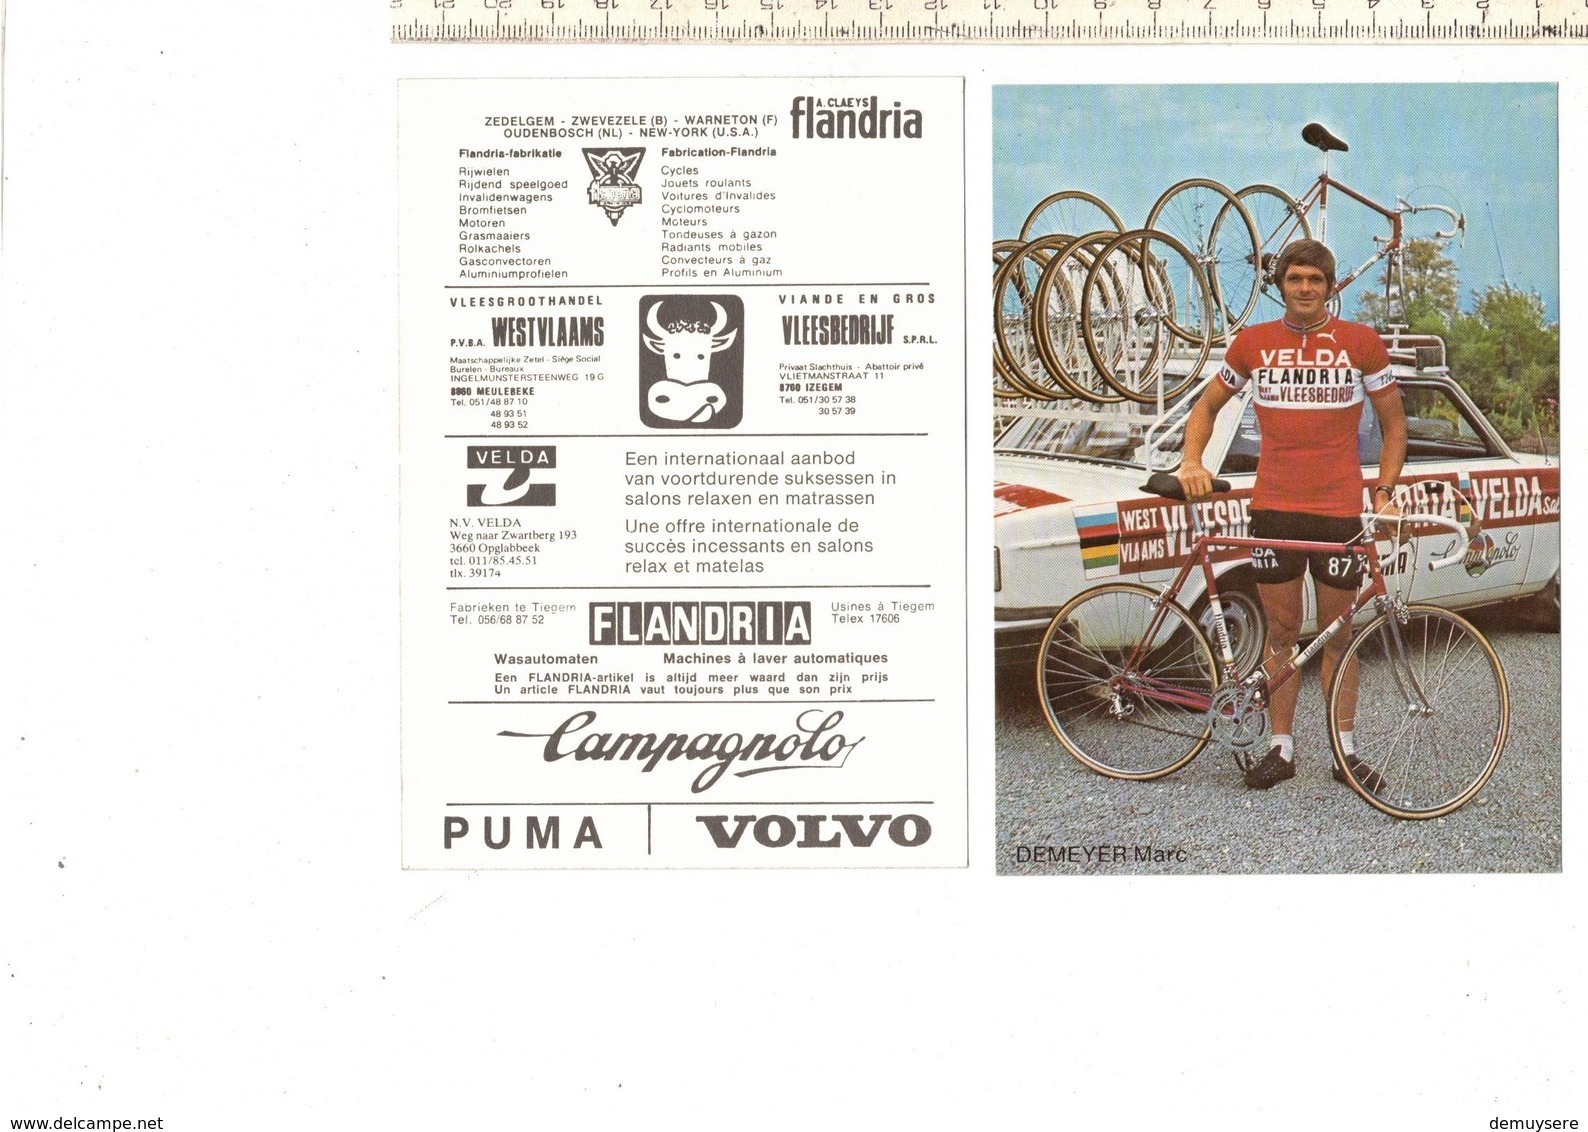 639 - CYCLISME - WIELRENNEN - DEMEYER MARC - FLANDRIA - Cycling